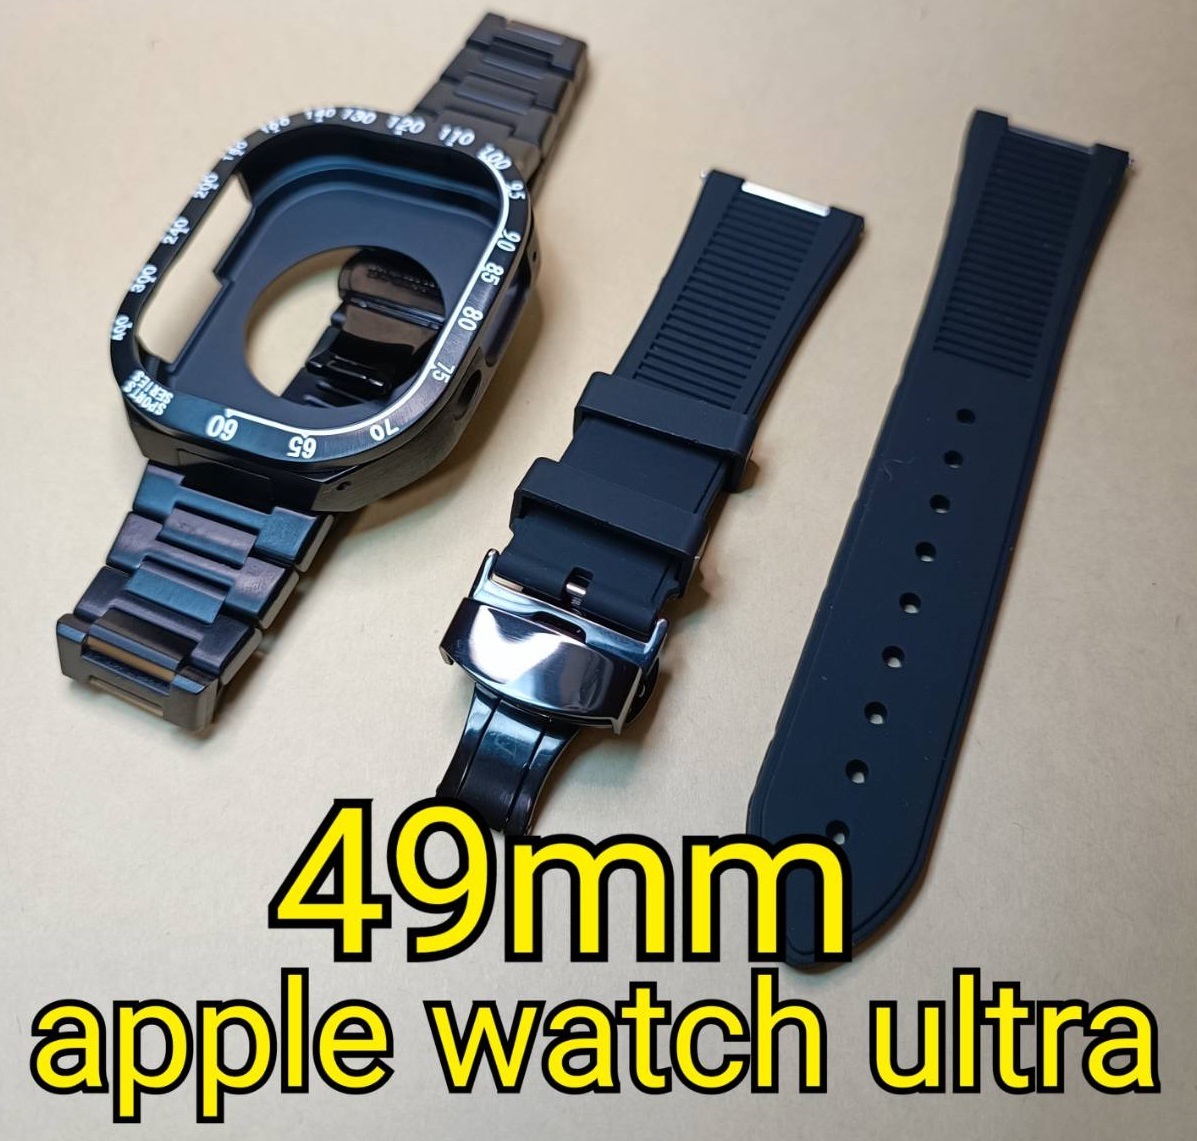 黒セット 49mm apple watch ultra アップルウォッチウルトラ ケース メタル ステンレス カスタム golden concept ゴールデンコンセプト